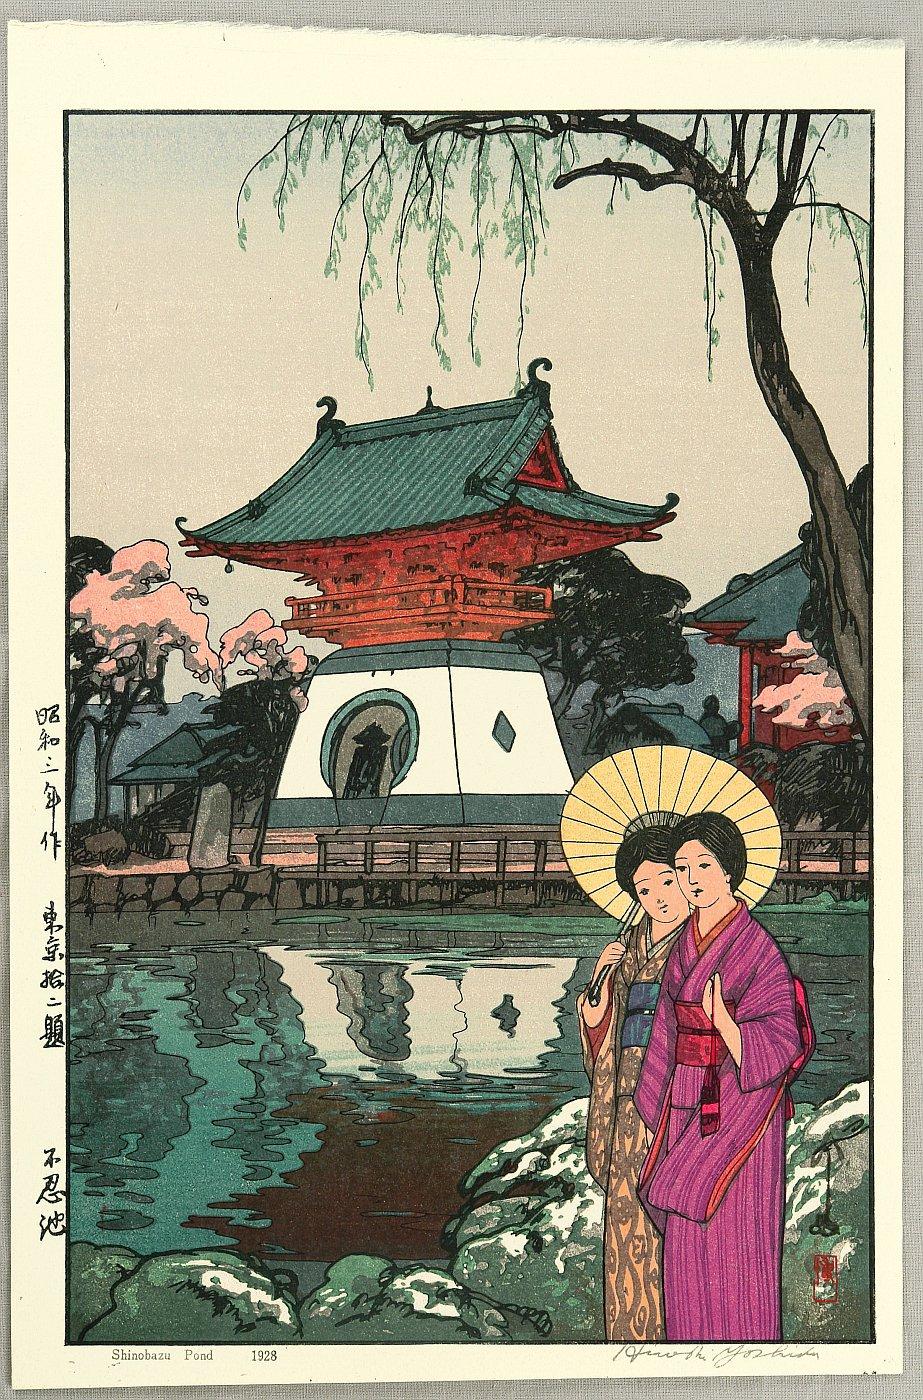 Hiroshi Yoshida - Shinobazu Pond